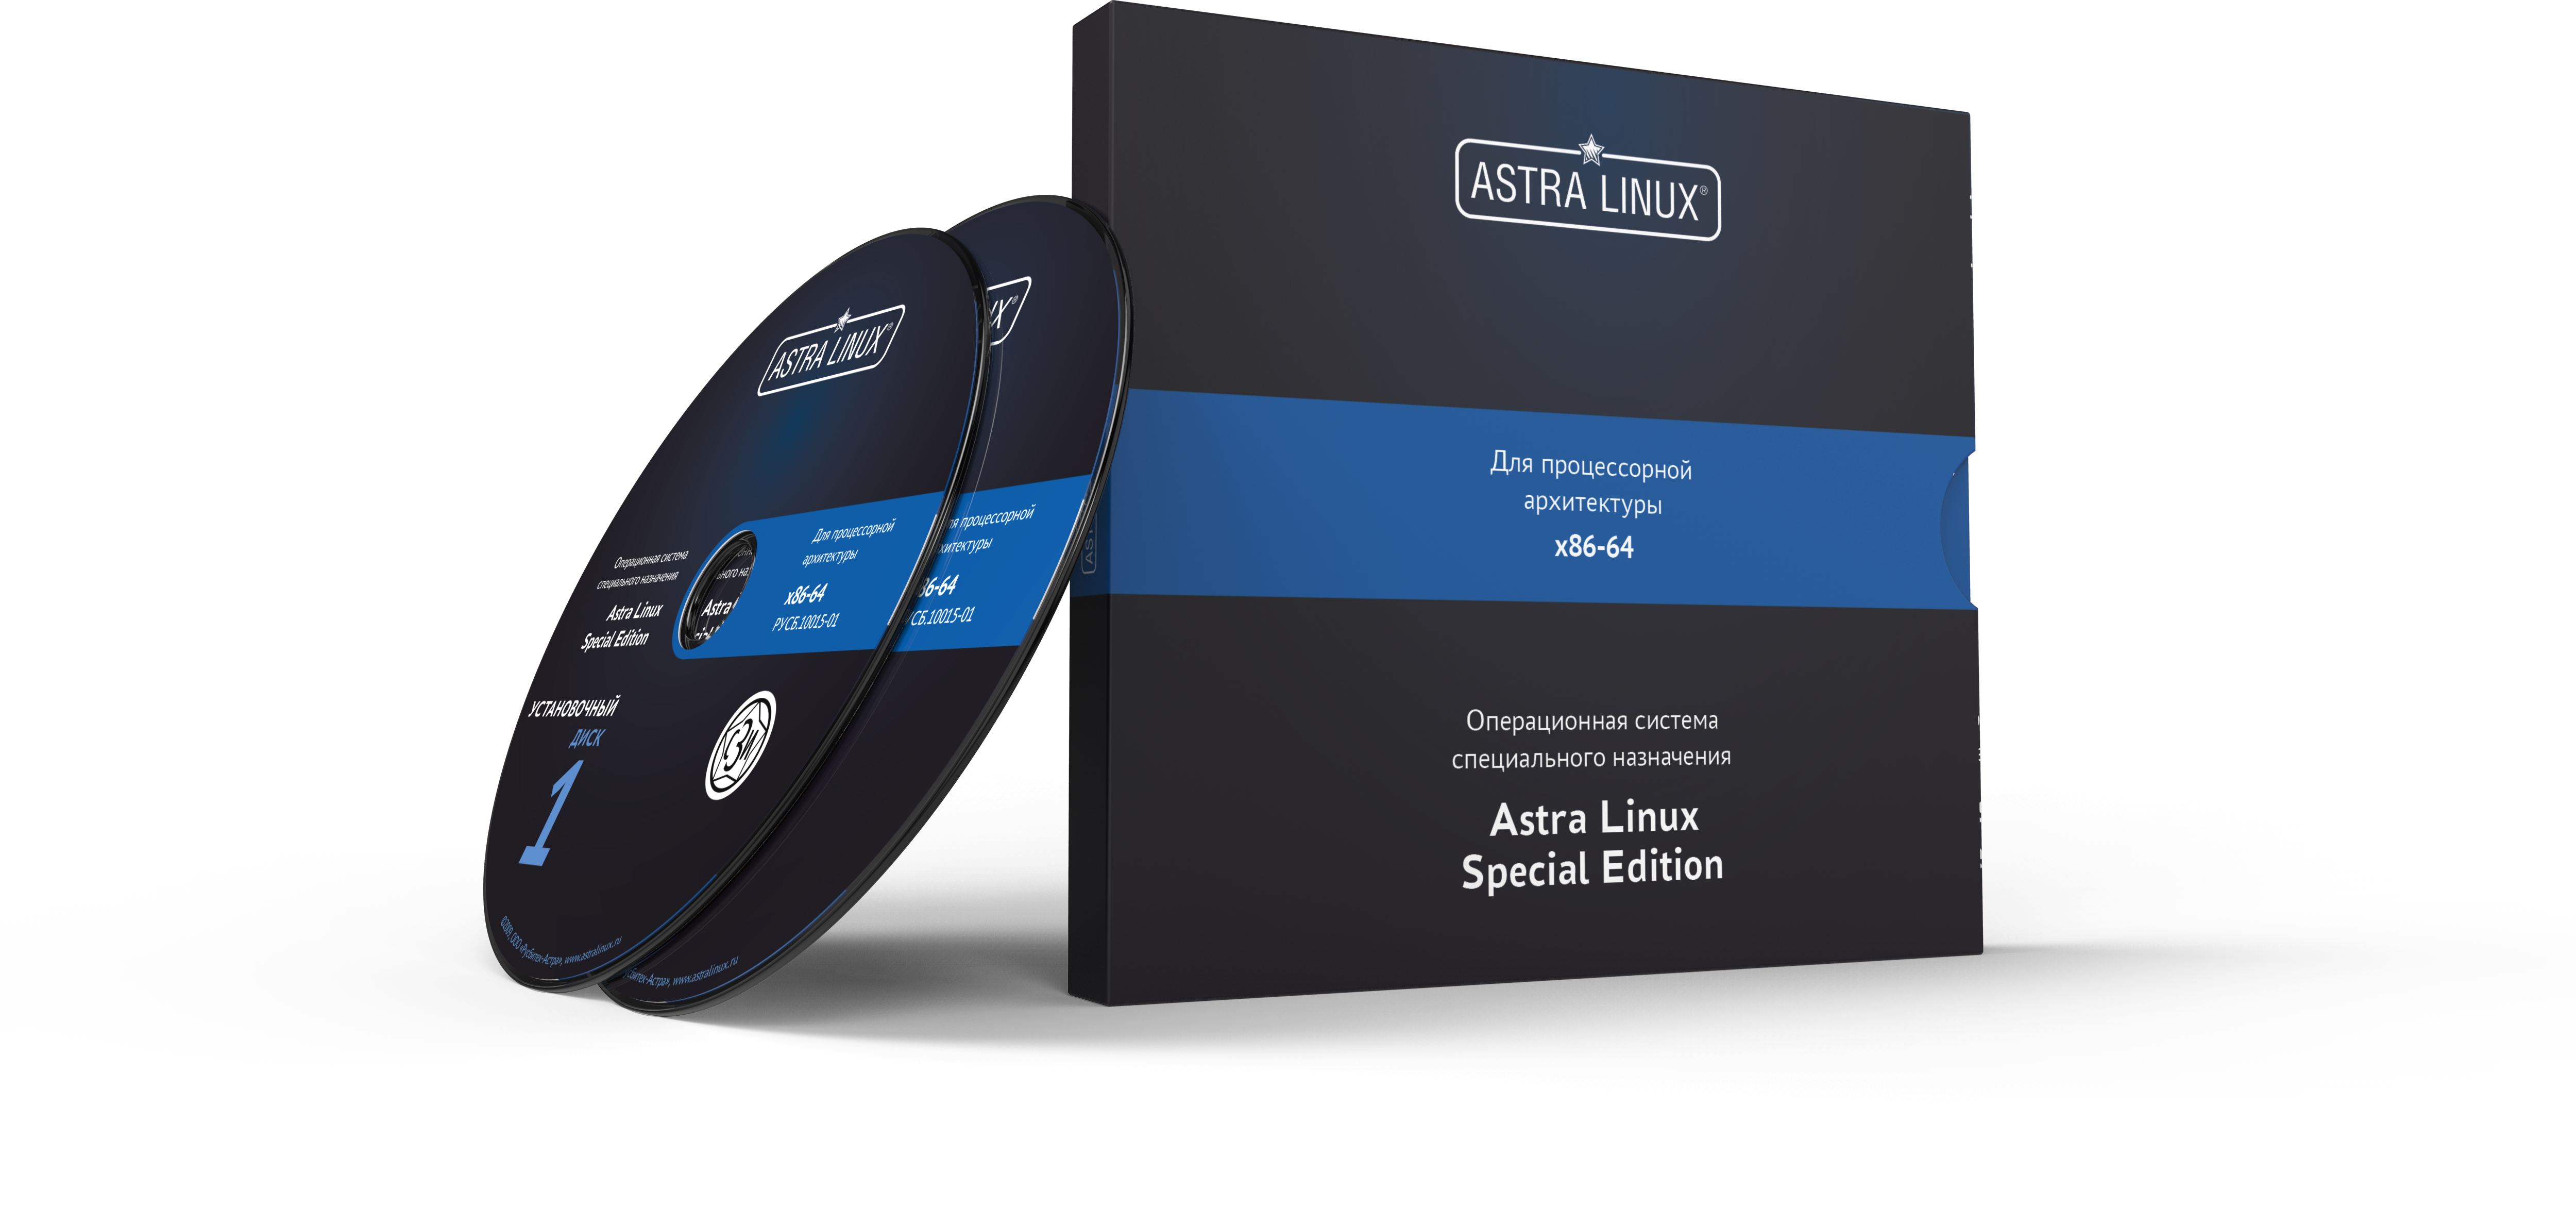 Astra Linux Special Edition 1.7 - Воронеж, РУСБ.10015-01 (ФСТЭК), диск, без огр. срока, ТП "Привилегированная" 36 мес.